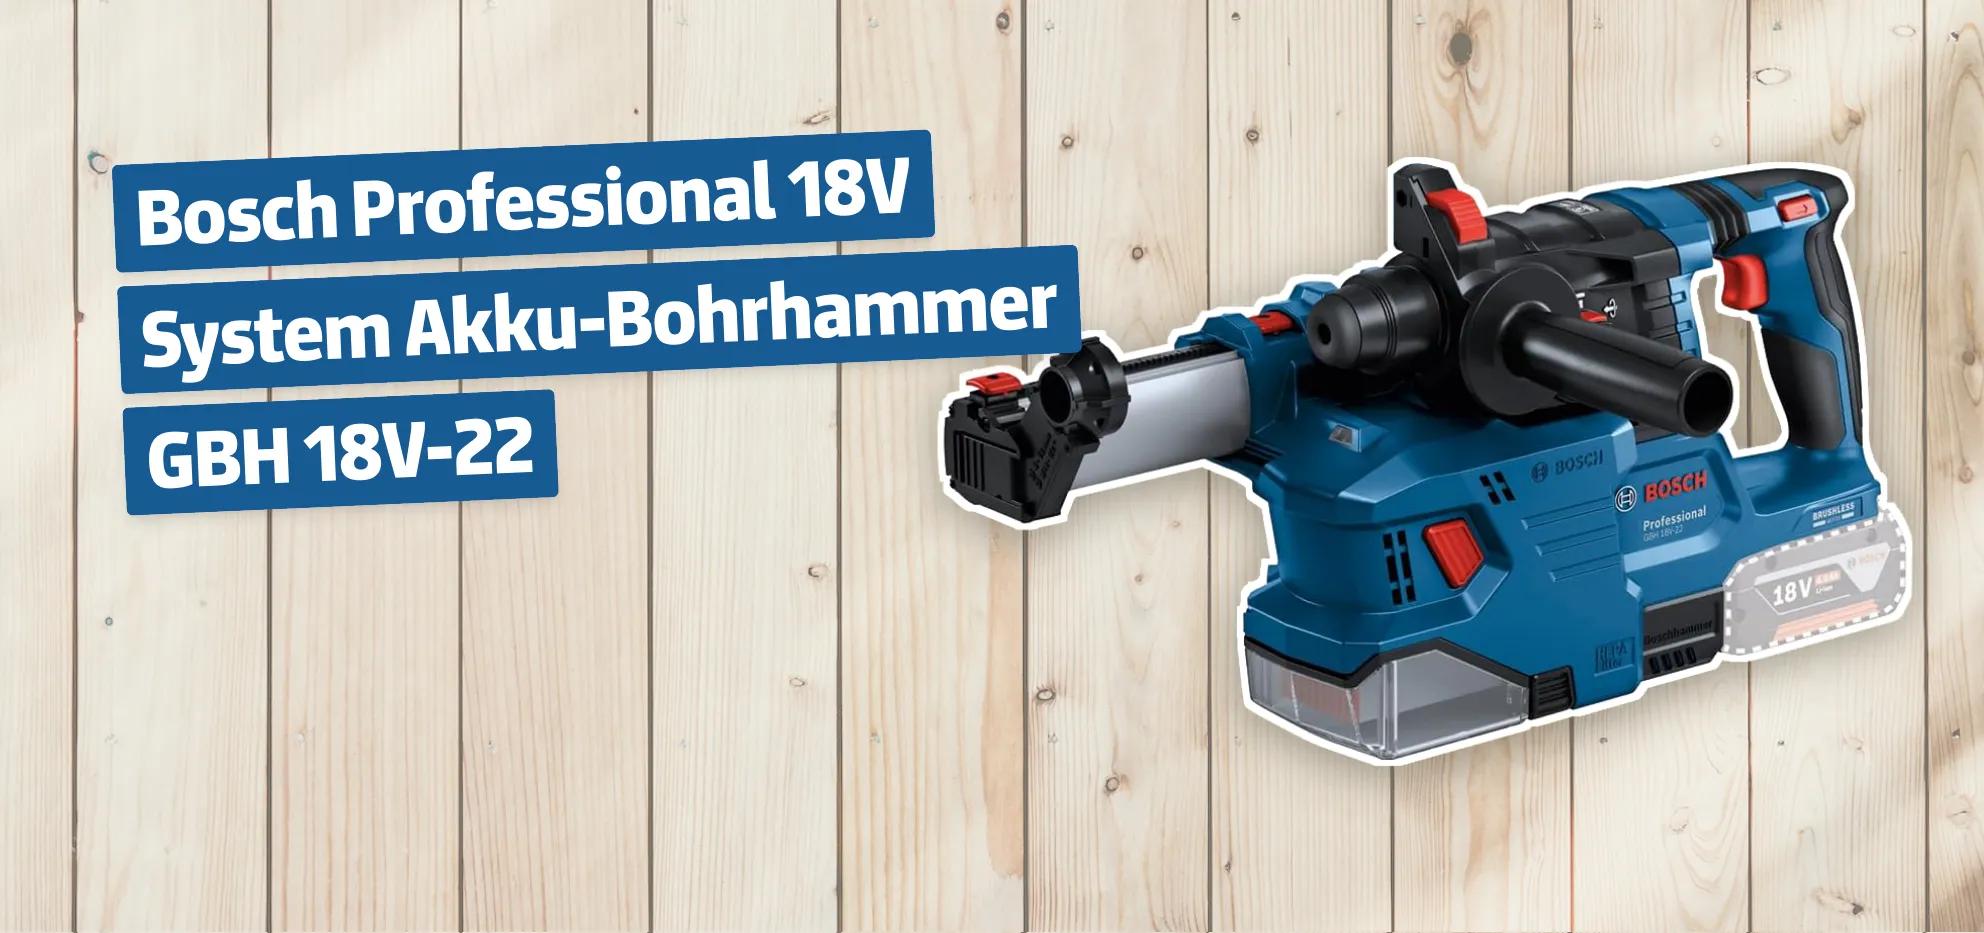 Bosch Professional 18V System Akku-Bohrhammer GBH 18V-22